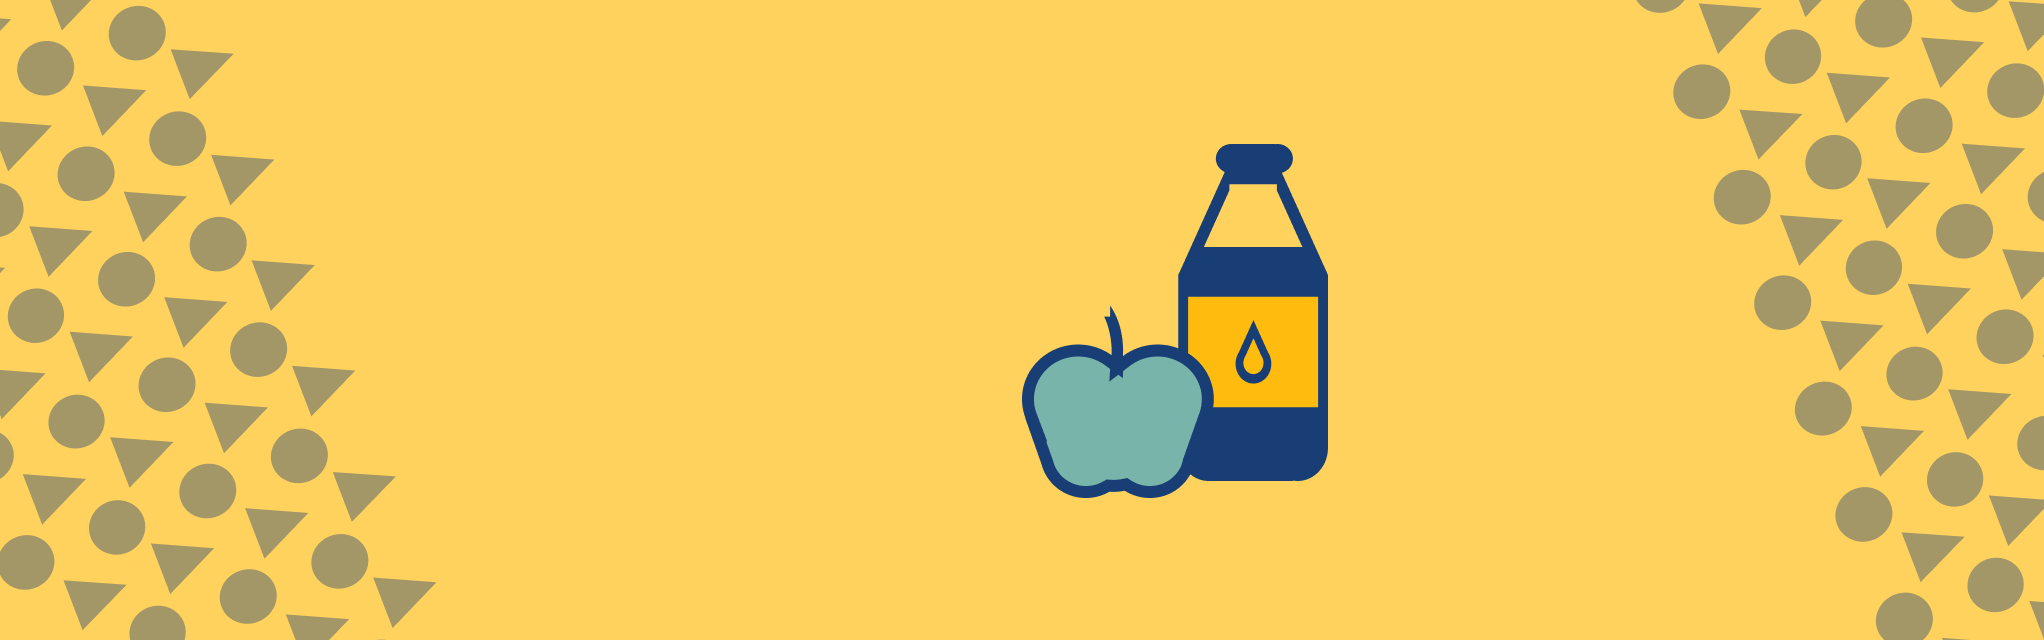 Apfel und Wasserflasche vor gelbem Hintergrund